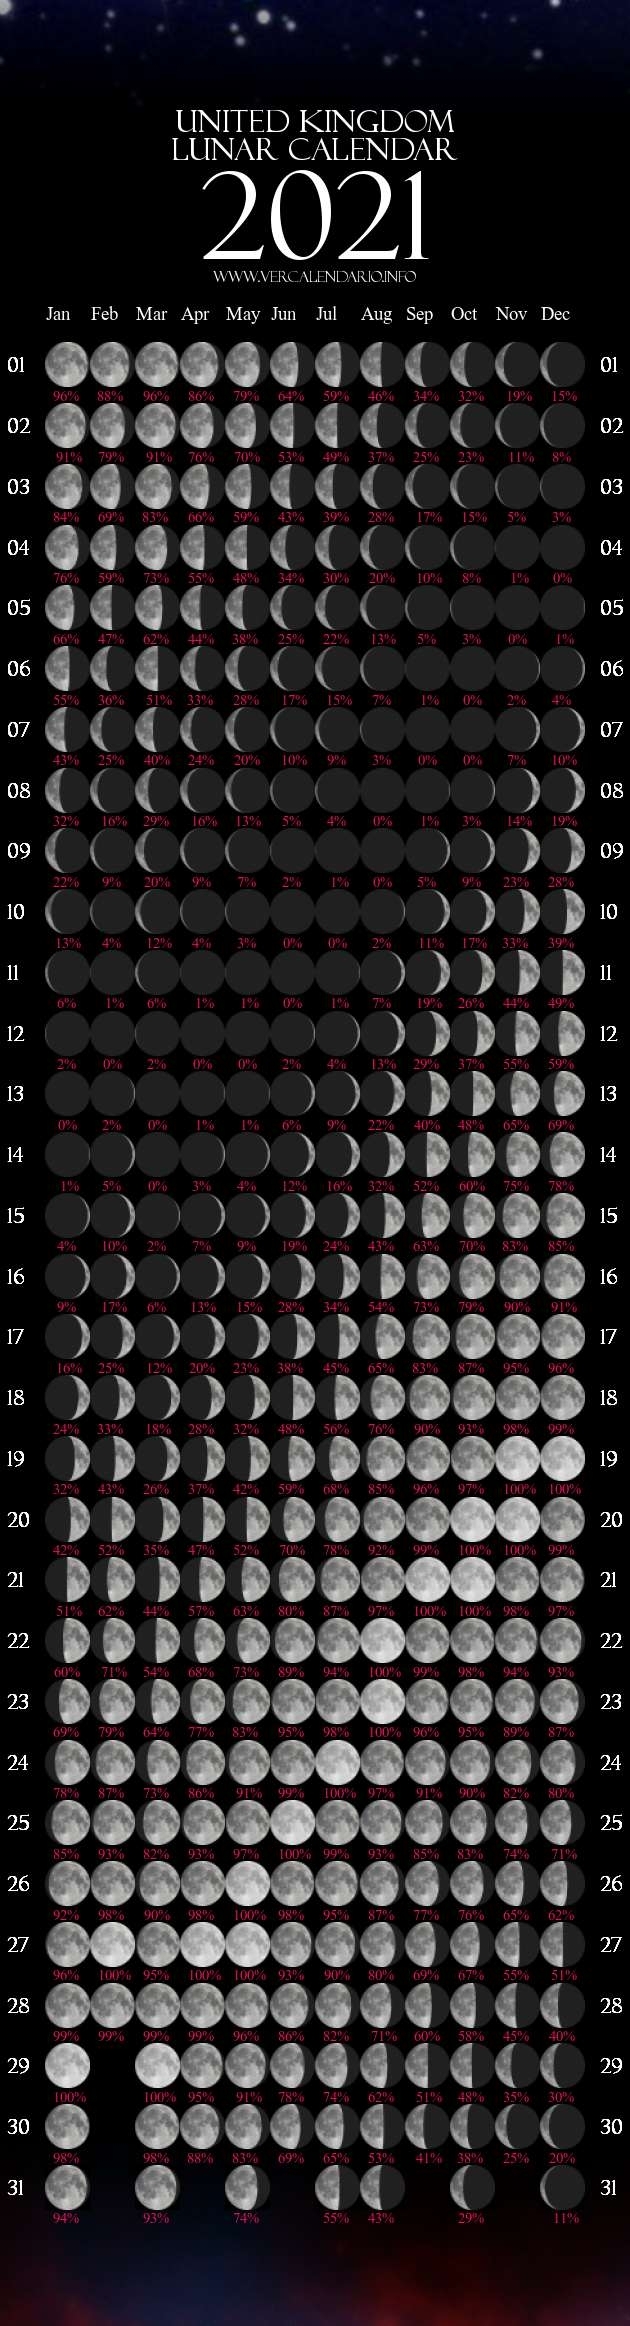 Lunar Calendar 2021 (United Kingdom)